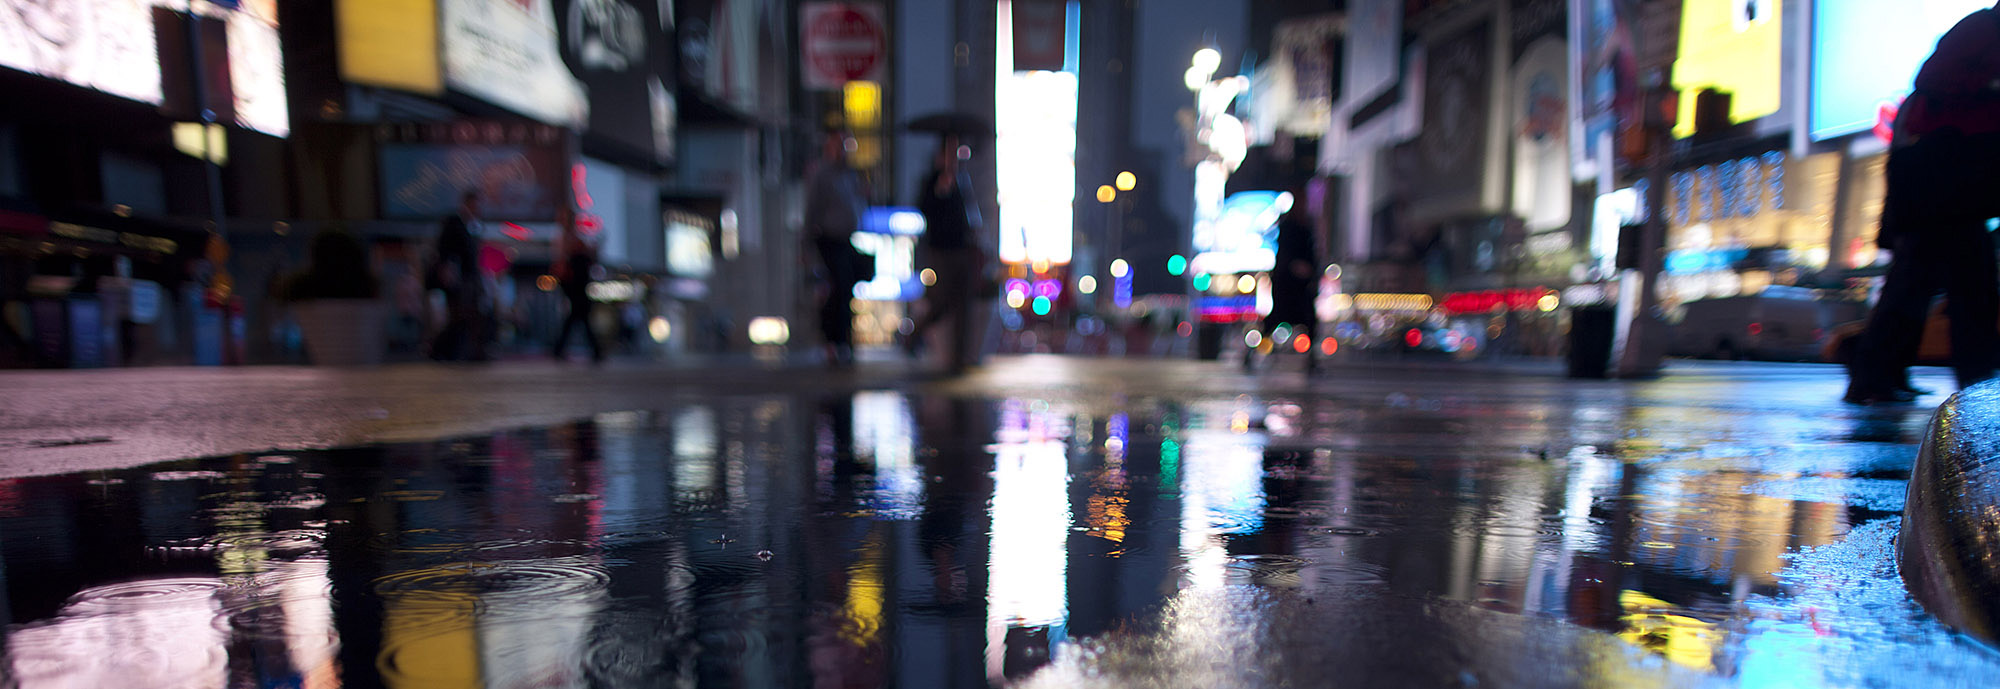 RF NYC Manhattan rain large lede